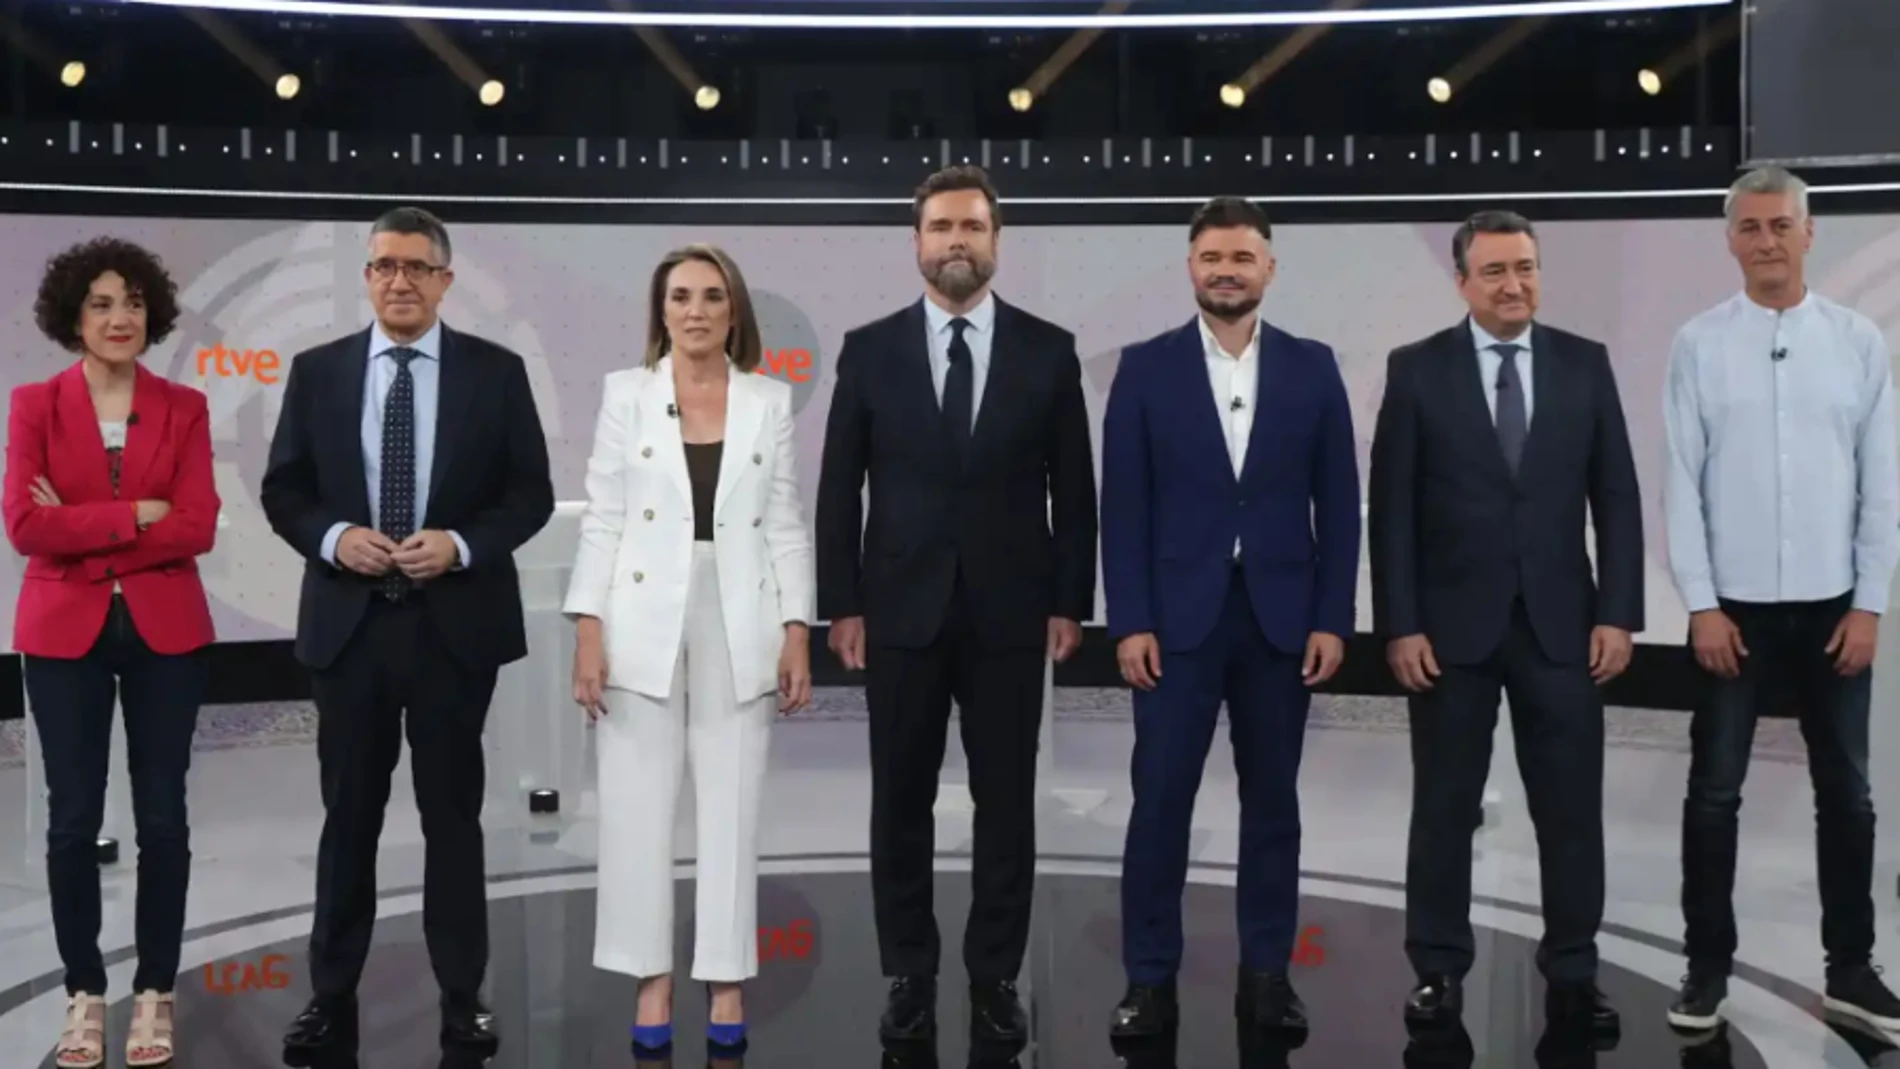 Los representantes políticos del 'Debate a 7' en RTVE